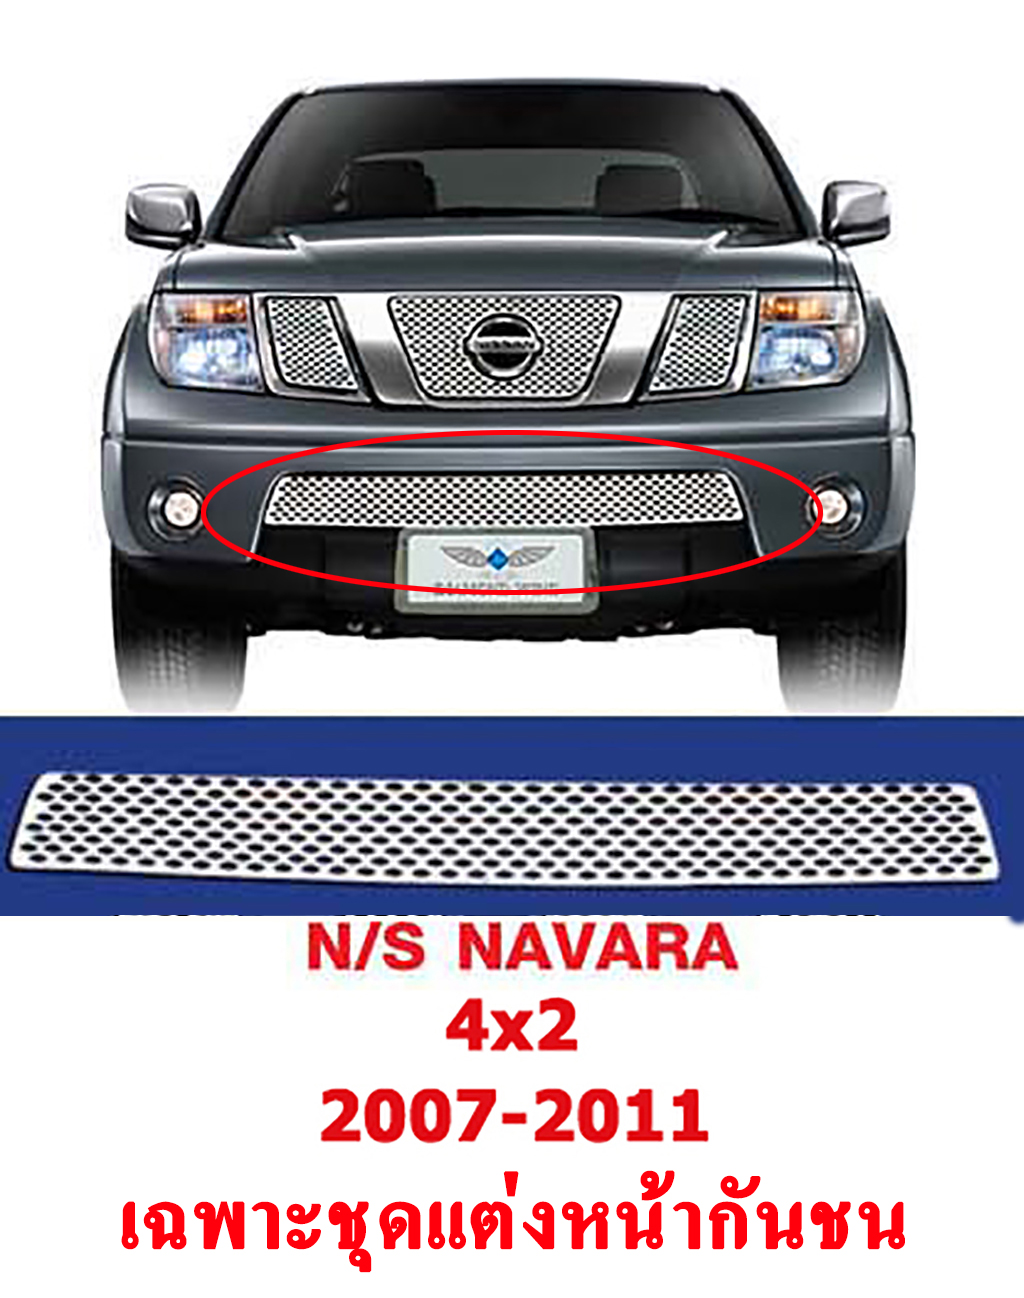 ***ลดล้างสต็อค*** ชุดแต่ง หน้ากันชน รถ นิสสัน นาวาร่า 4x2 ปี 2007 ถึงปี 2011  (Nissan Navara 4x2 2007-2011) สแตนเลสแท้ ลายรังผึ้ง สีโครเมี่ยม ผลิตและนำเข้าจากไต้หวัน DIAMOND WING